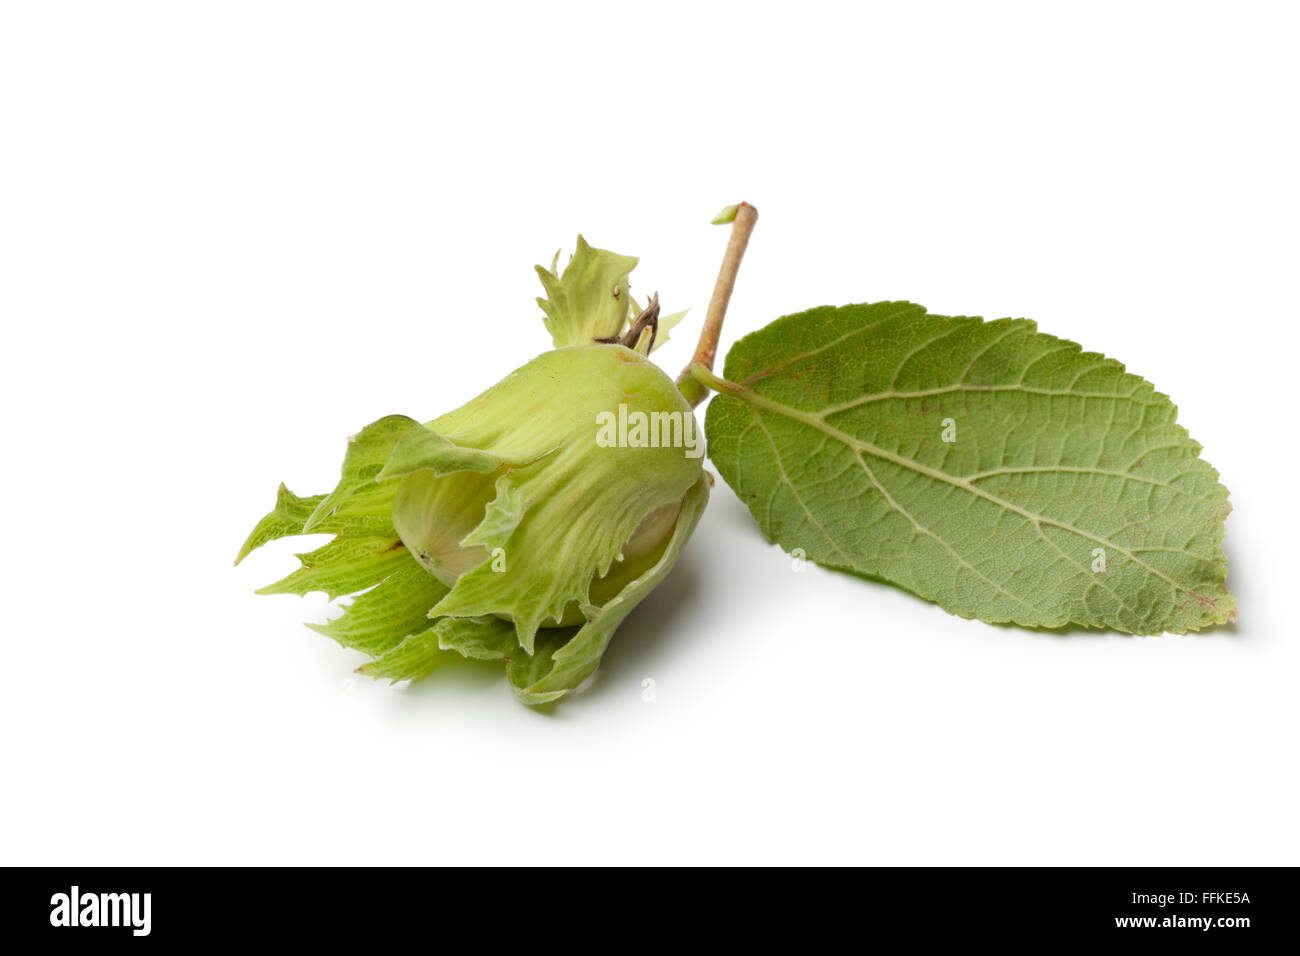 Fresh unripe hazelnut and leaf on white background Stock Photo